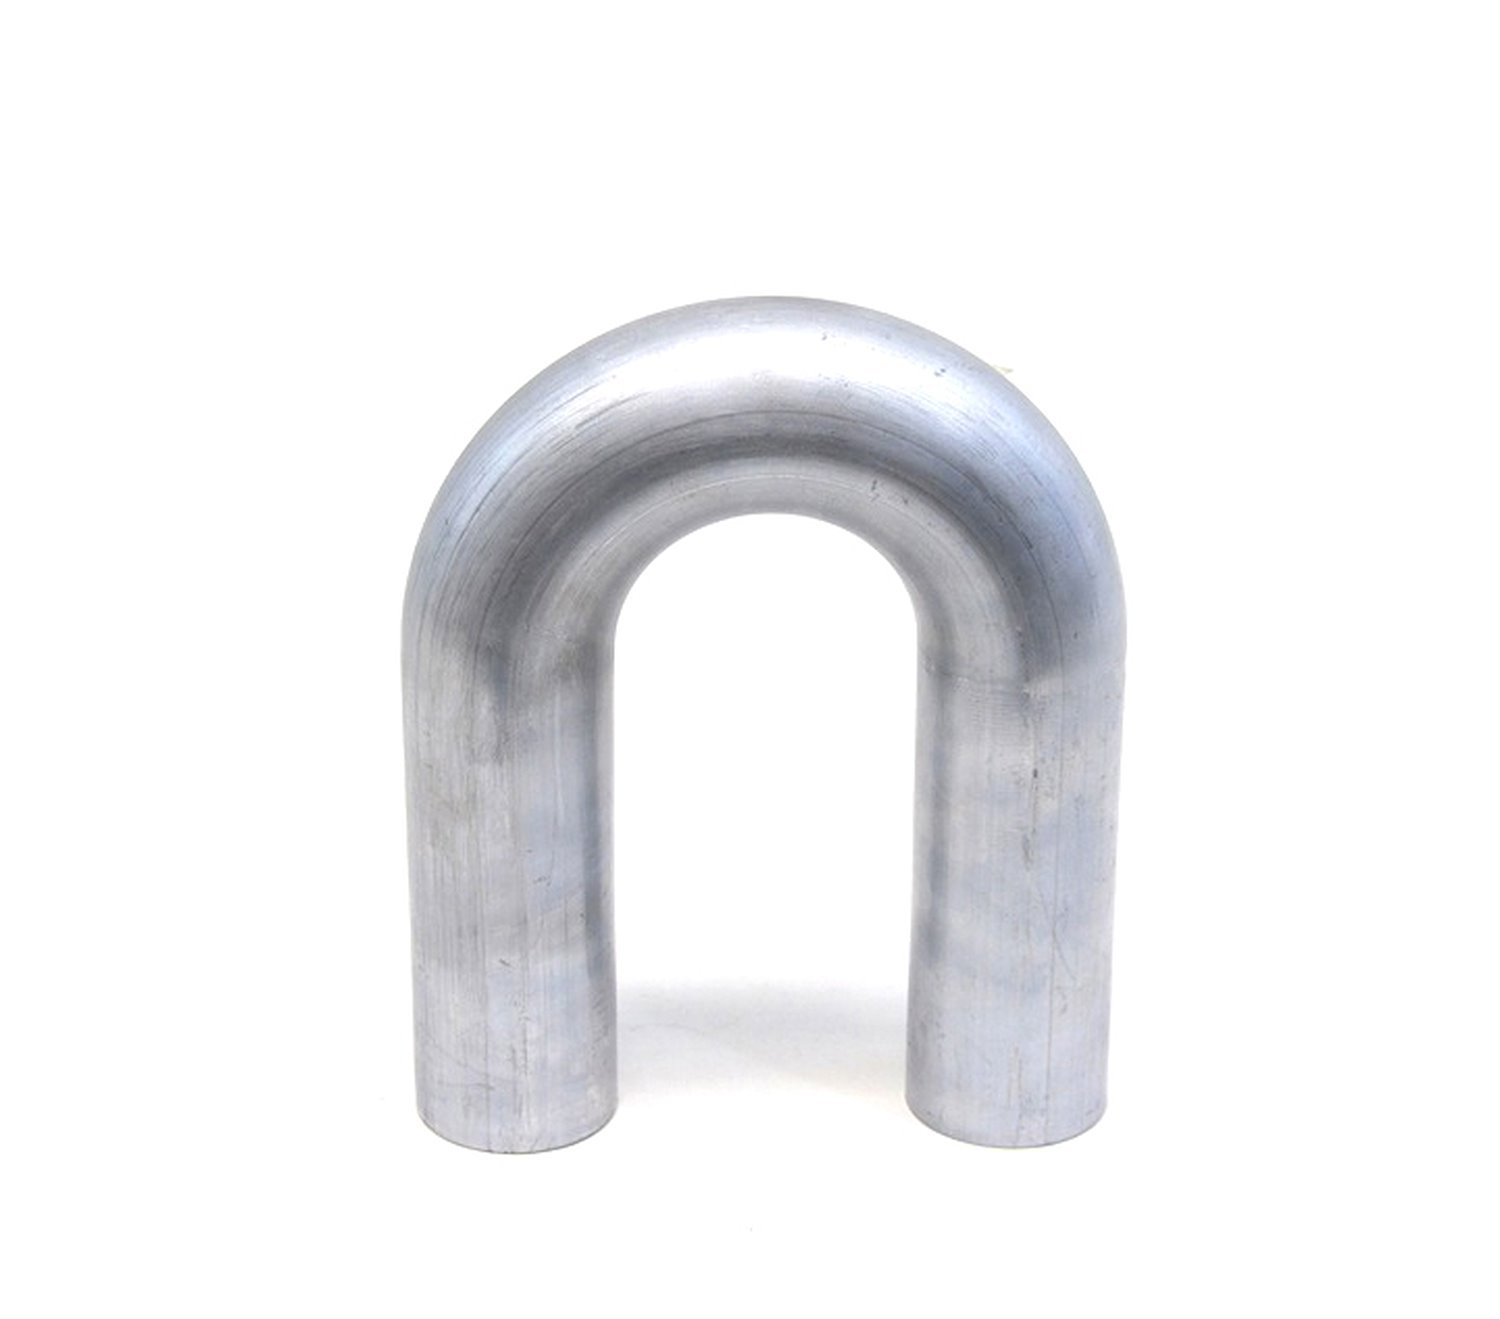 AT180-225-CLR-35 Aluminum Elbow Tube, 6061 Aluminum, 180-Degree U Bend Elbow Tubing, 2-1/4 in. OD, Tight Radius, 3-1/2 in. CLR